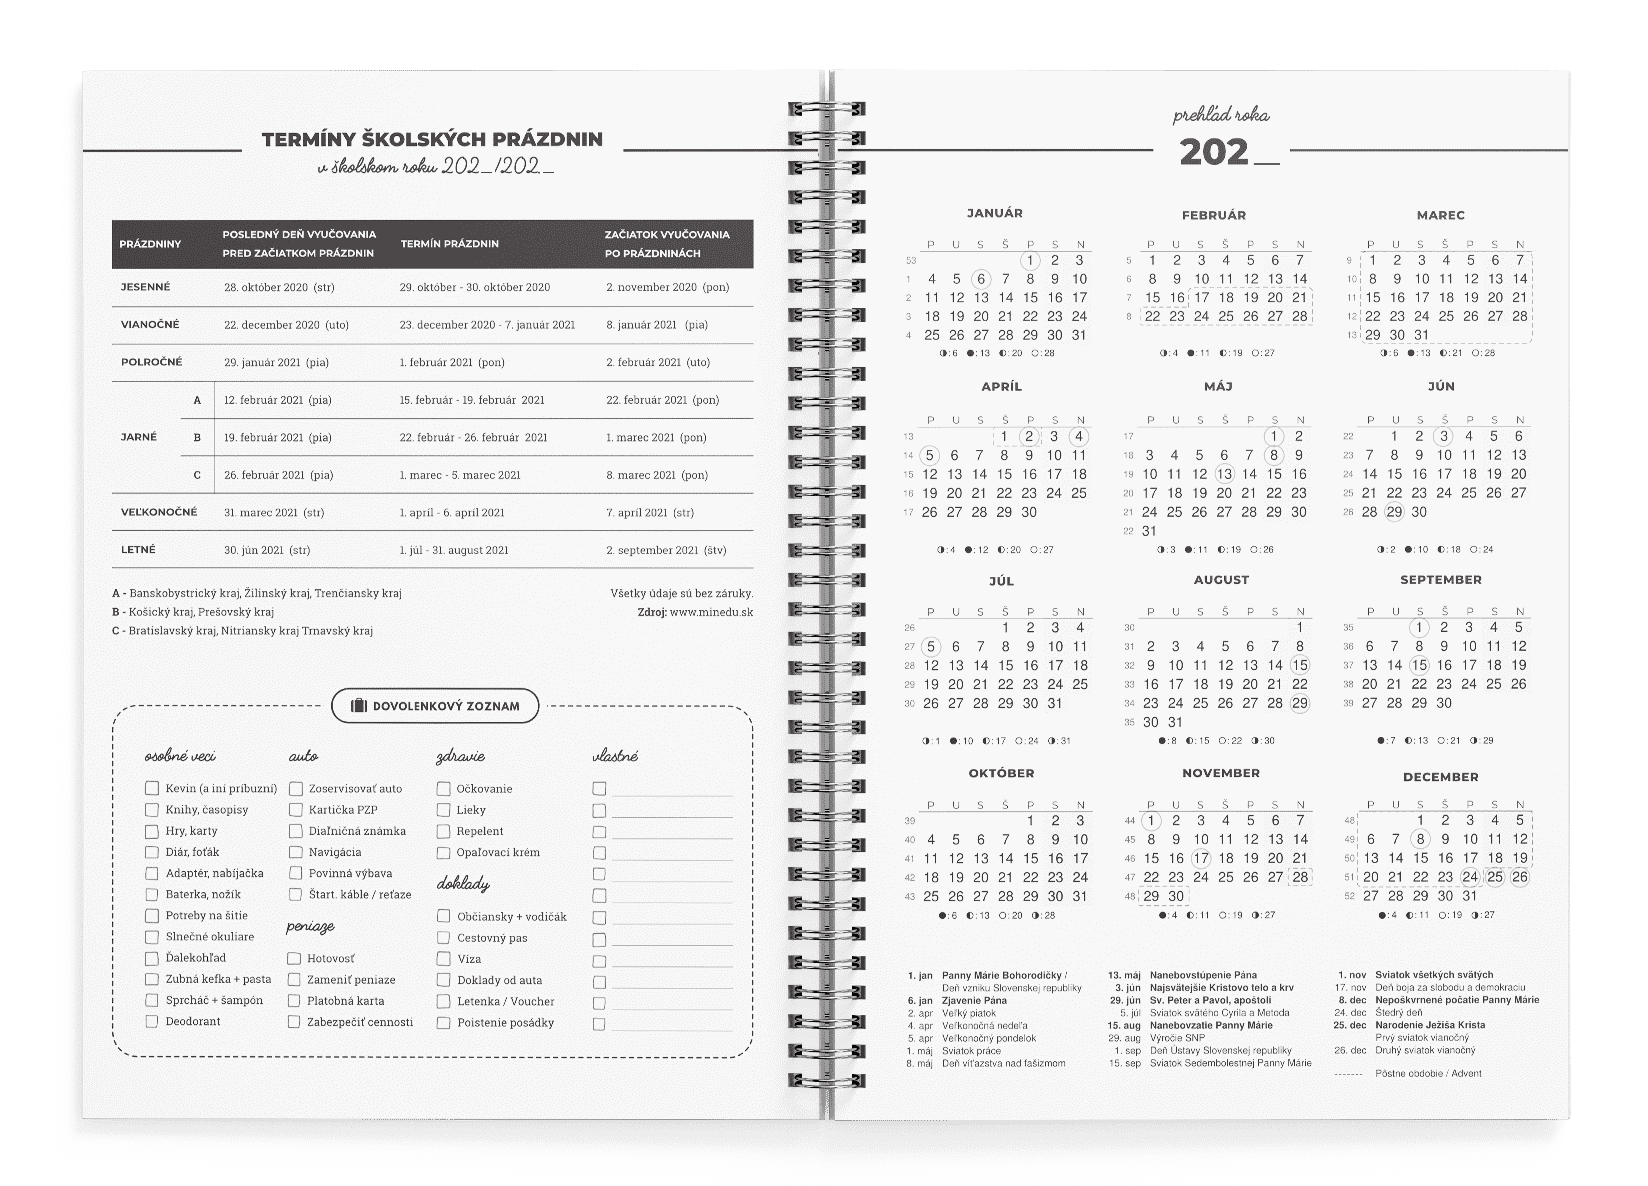 Kresťanský motivačný diár: prehľadný ročný kalendár 2019, sviatky, prázdniny a dovolenkový zoznam